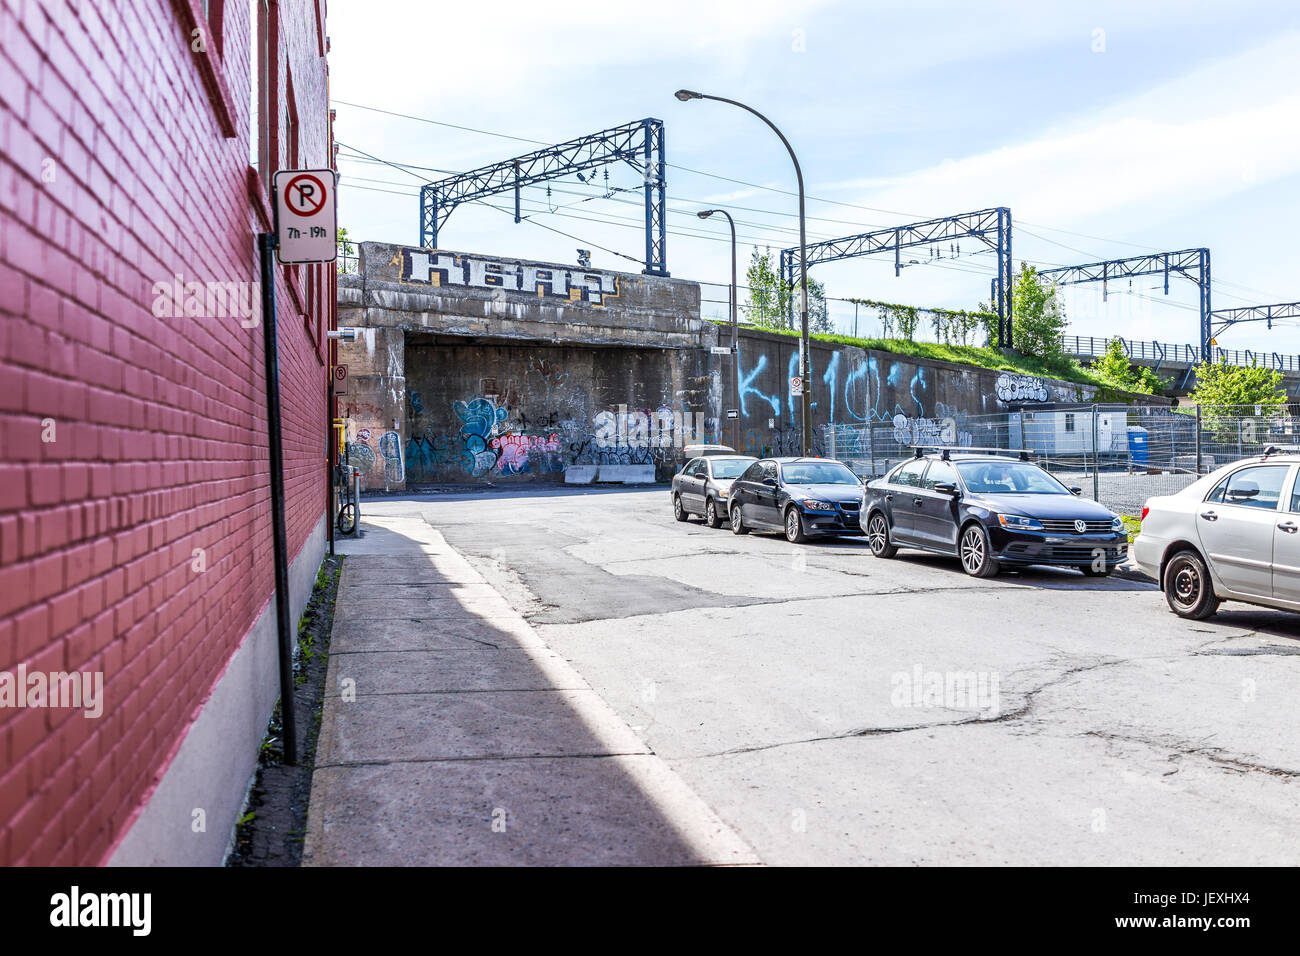 Montreal, Kanada - 28. Mai 2017: Innenstadt mit Parken an der Straße Zeichen, Autos und Graffiti tagsüber außerhalb Region Québec Stockfoto